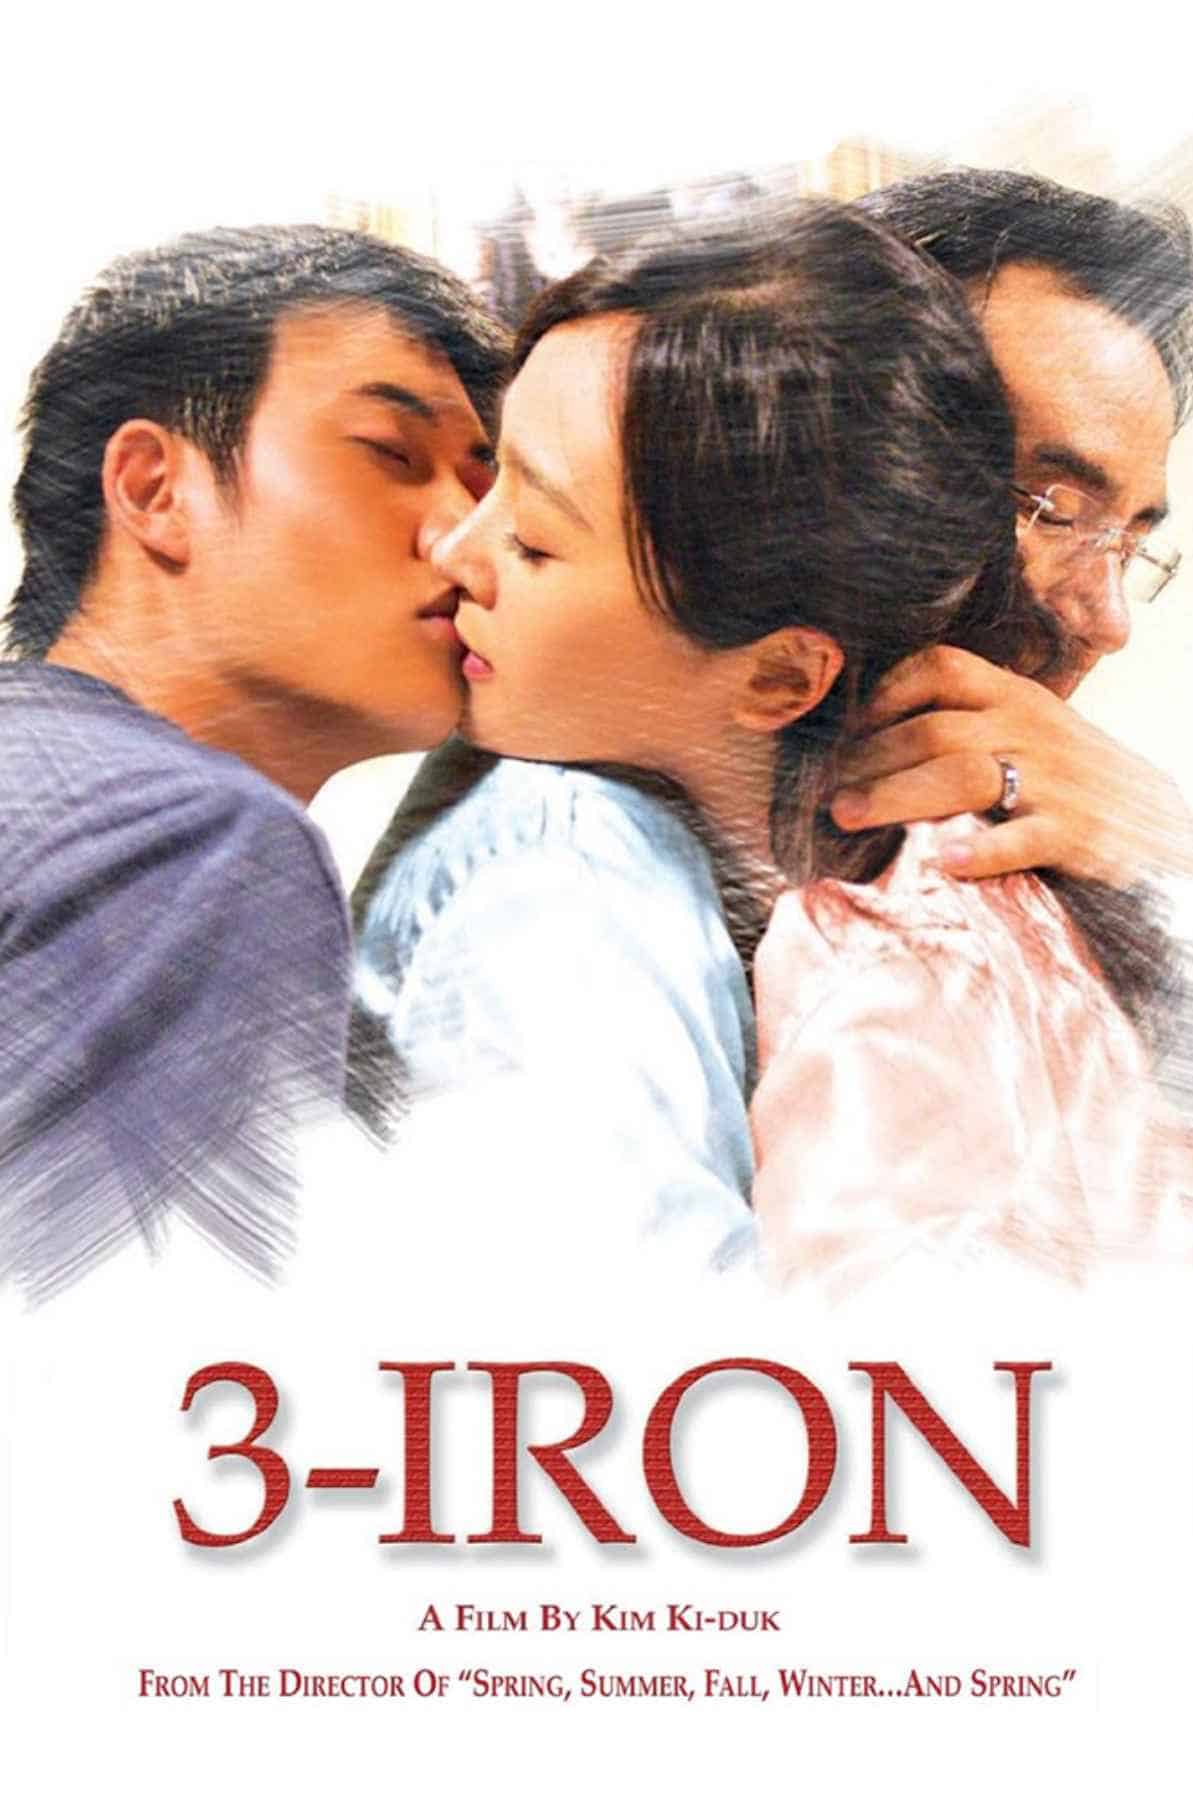 3-Iron (2004)